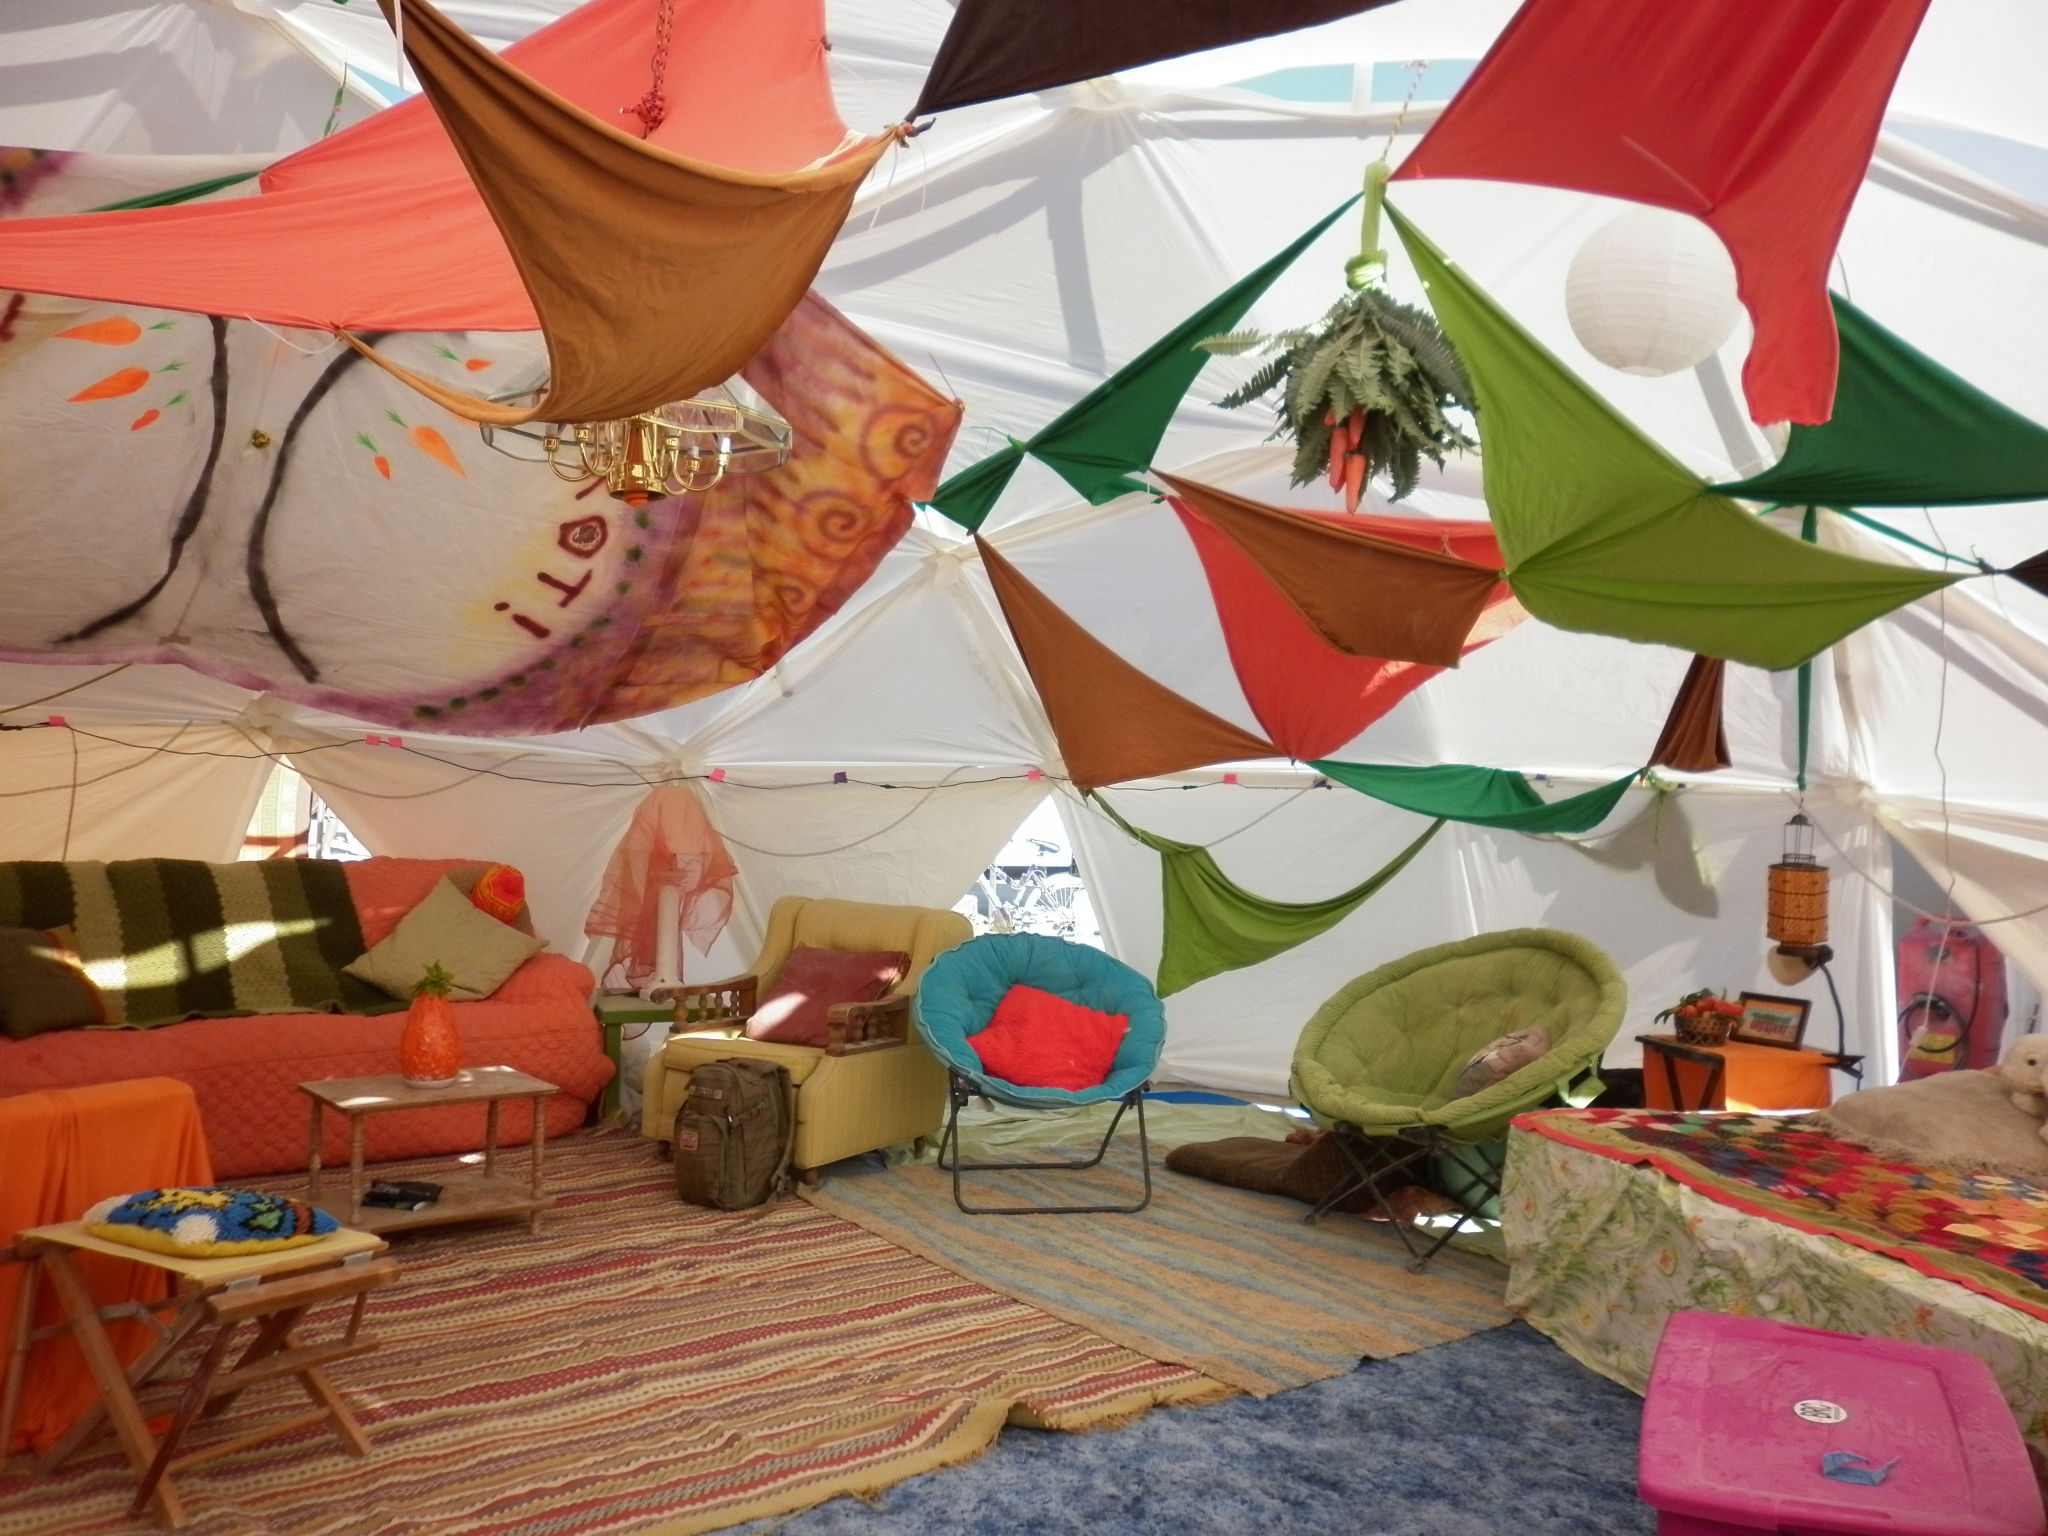 Camp men. Бернинг Мэн кемпинг. Burning man палатки. Клемпинг фестиваль декор. Тканевая палатка Burning man.